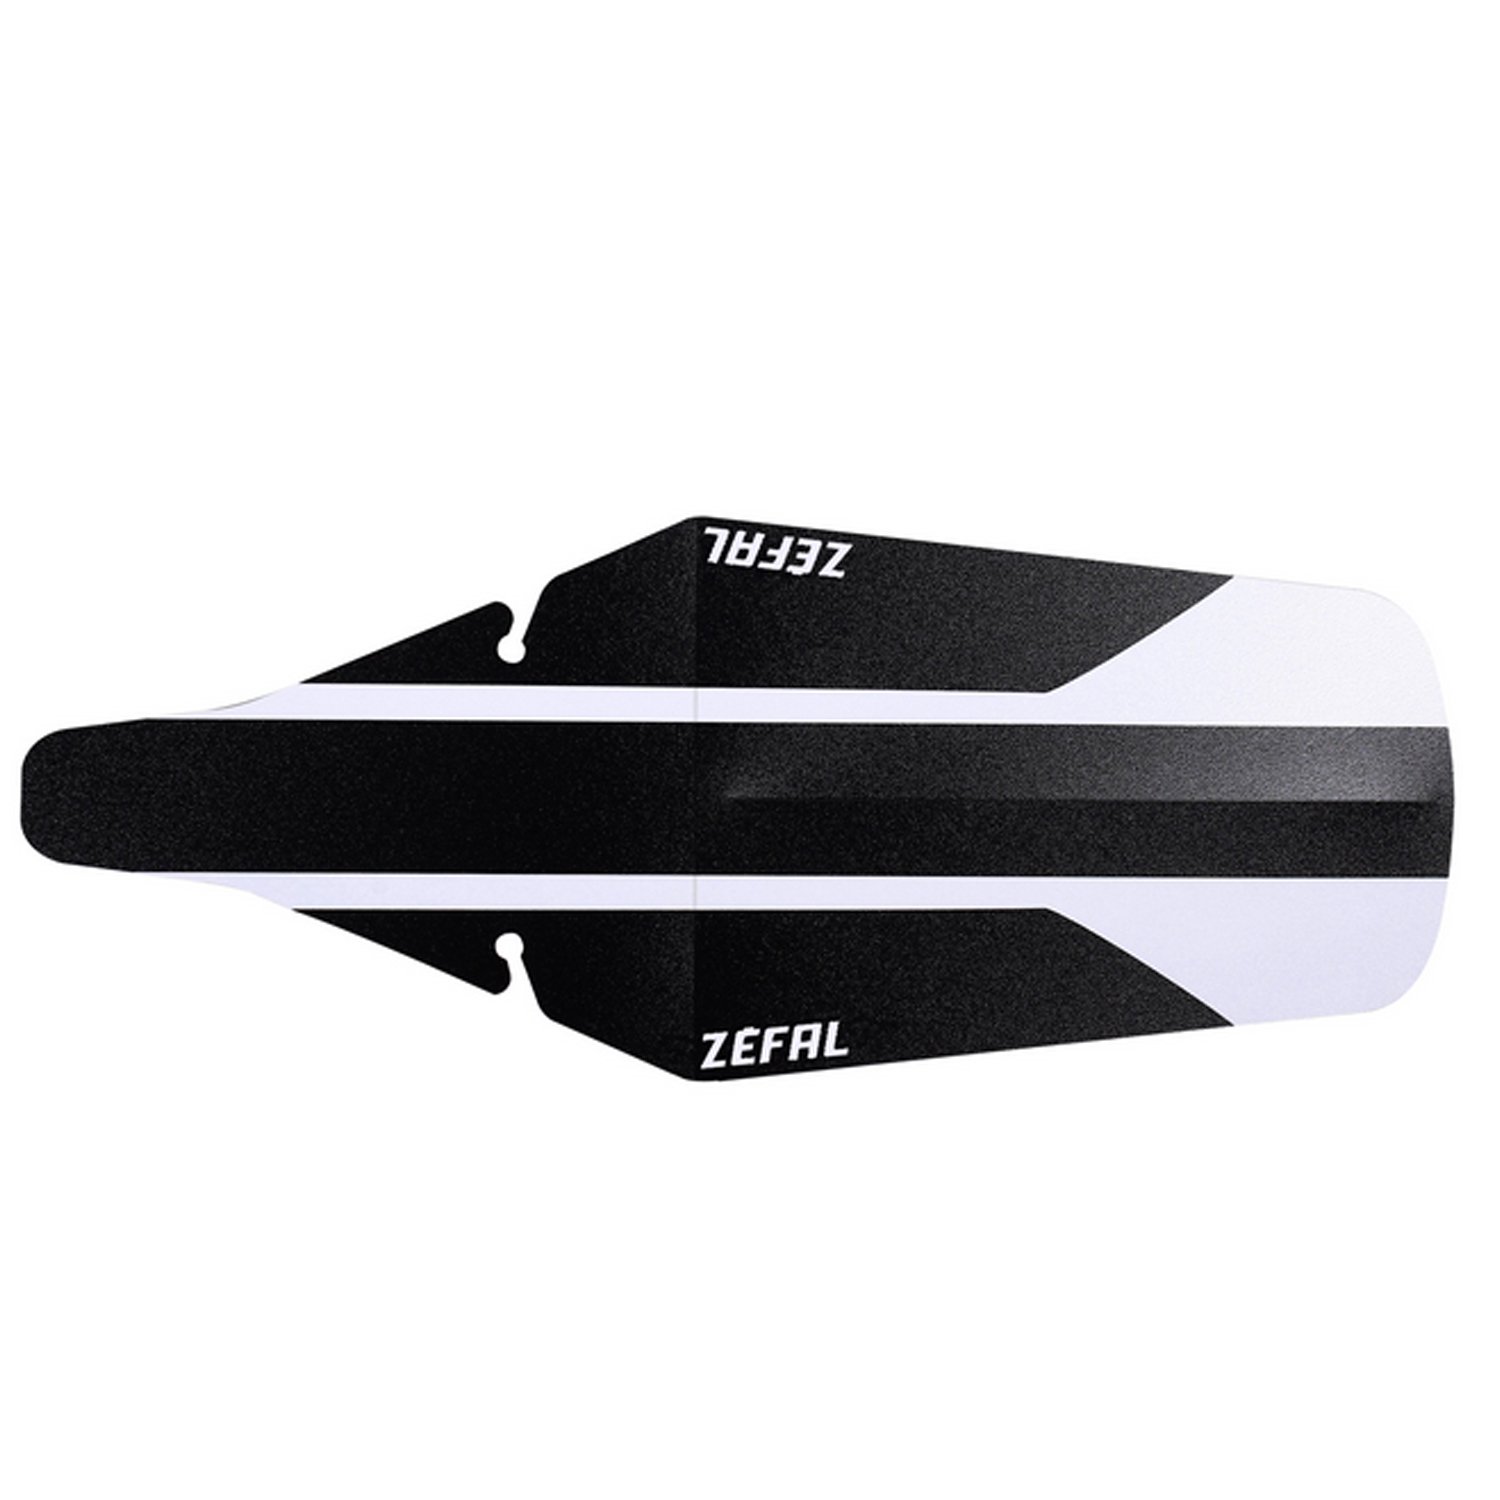 Крыло велосипедное Zefal Shield Lite Xl Rear Mudguard, заднее, черный/белый, 2561А крыло tacx mudguard race t7000